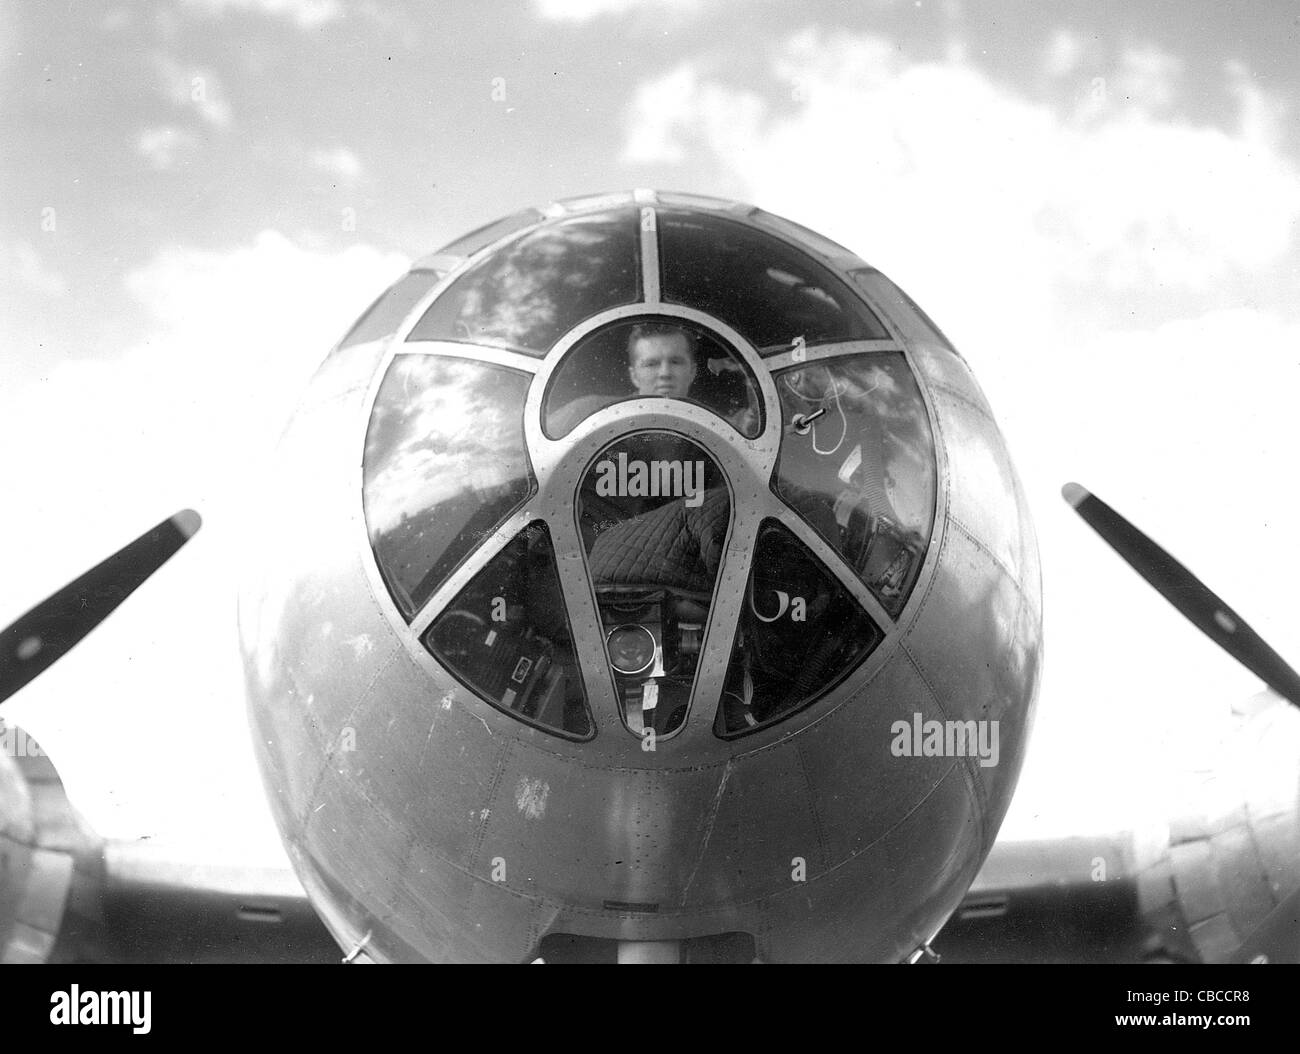 Détail d'un nez de la USAAF WW11 B29 Superfortress bomber montrant le plexiglas perspex canopy et lance-bombes. Banque D'Images